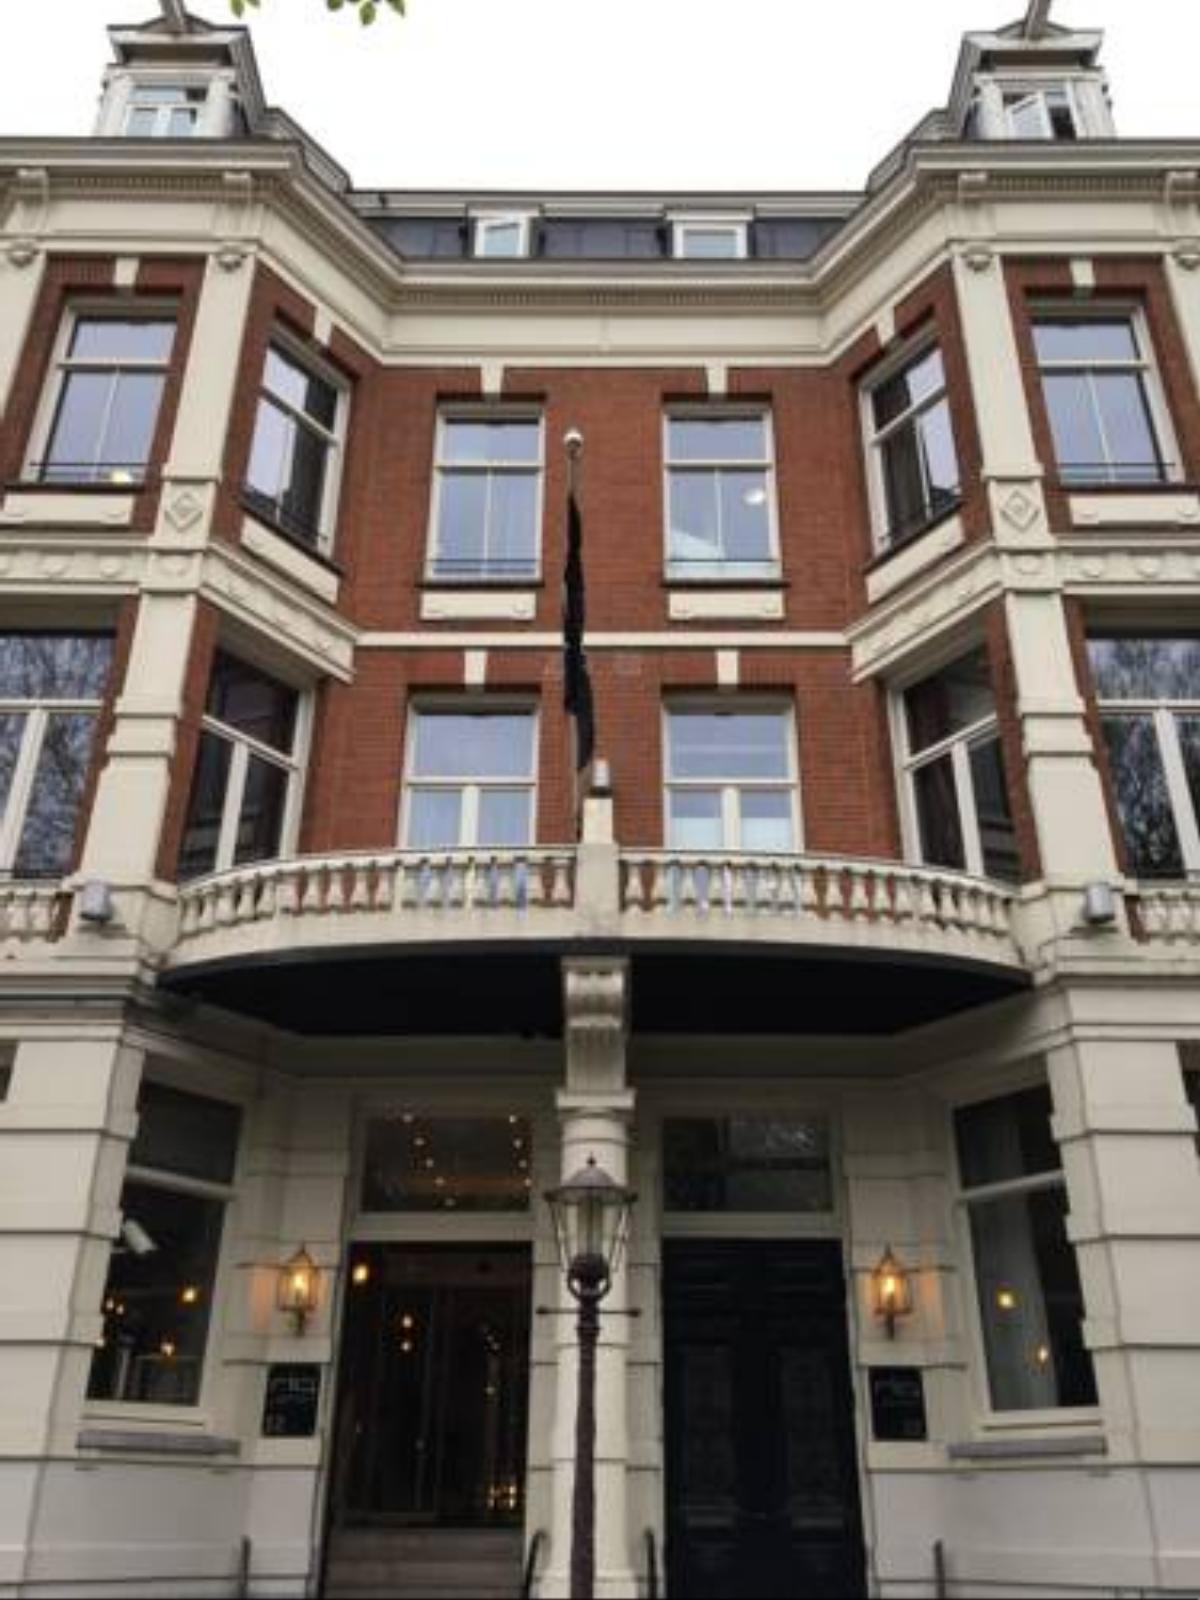 Hotel Piet Hein Hotel Amsterdam Netherlands